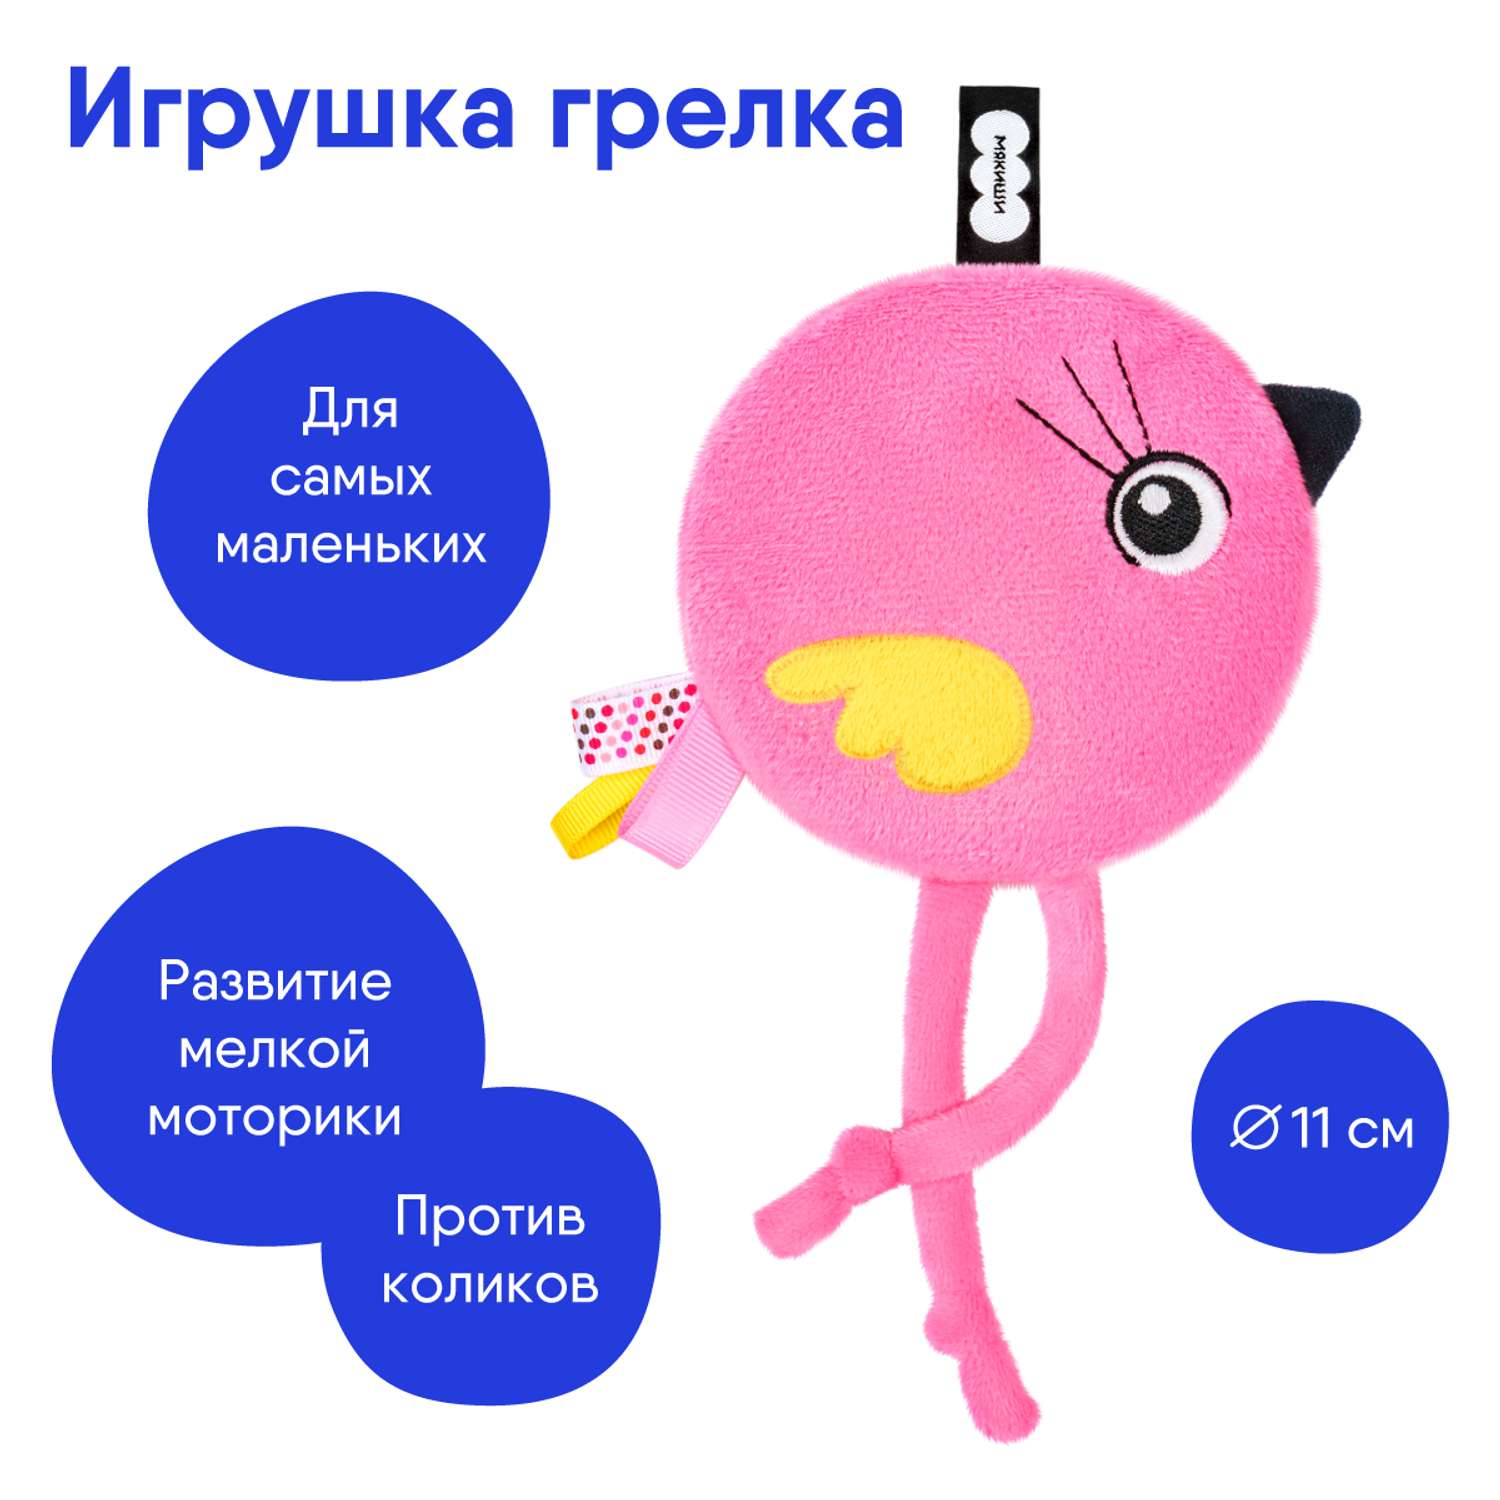 Игрушка грелка Мякиши с вишнёвыми косточками Птичка Люми для новорожденных от коликов подарок - фото 2